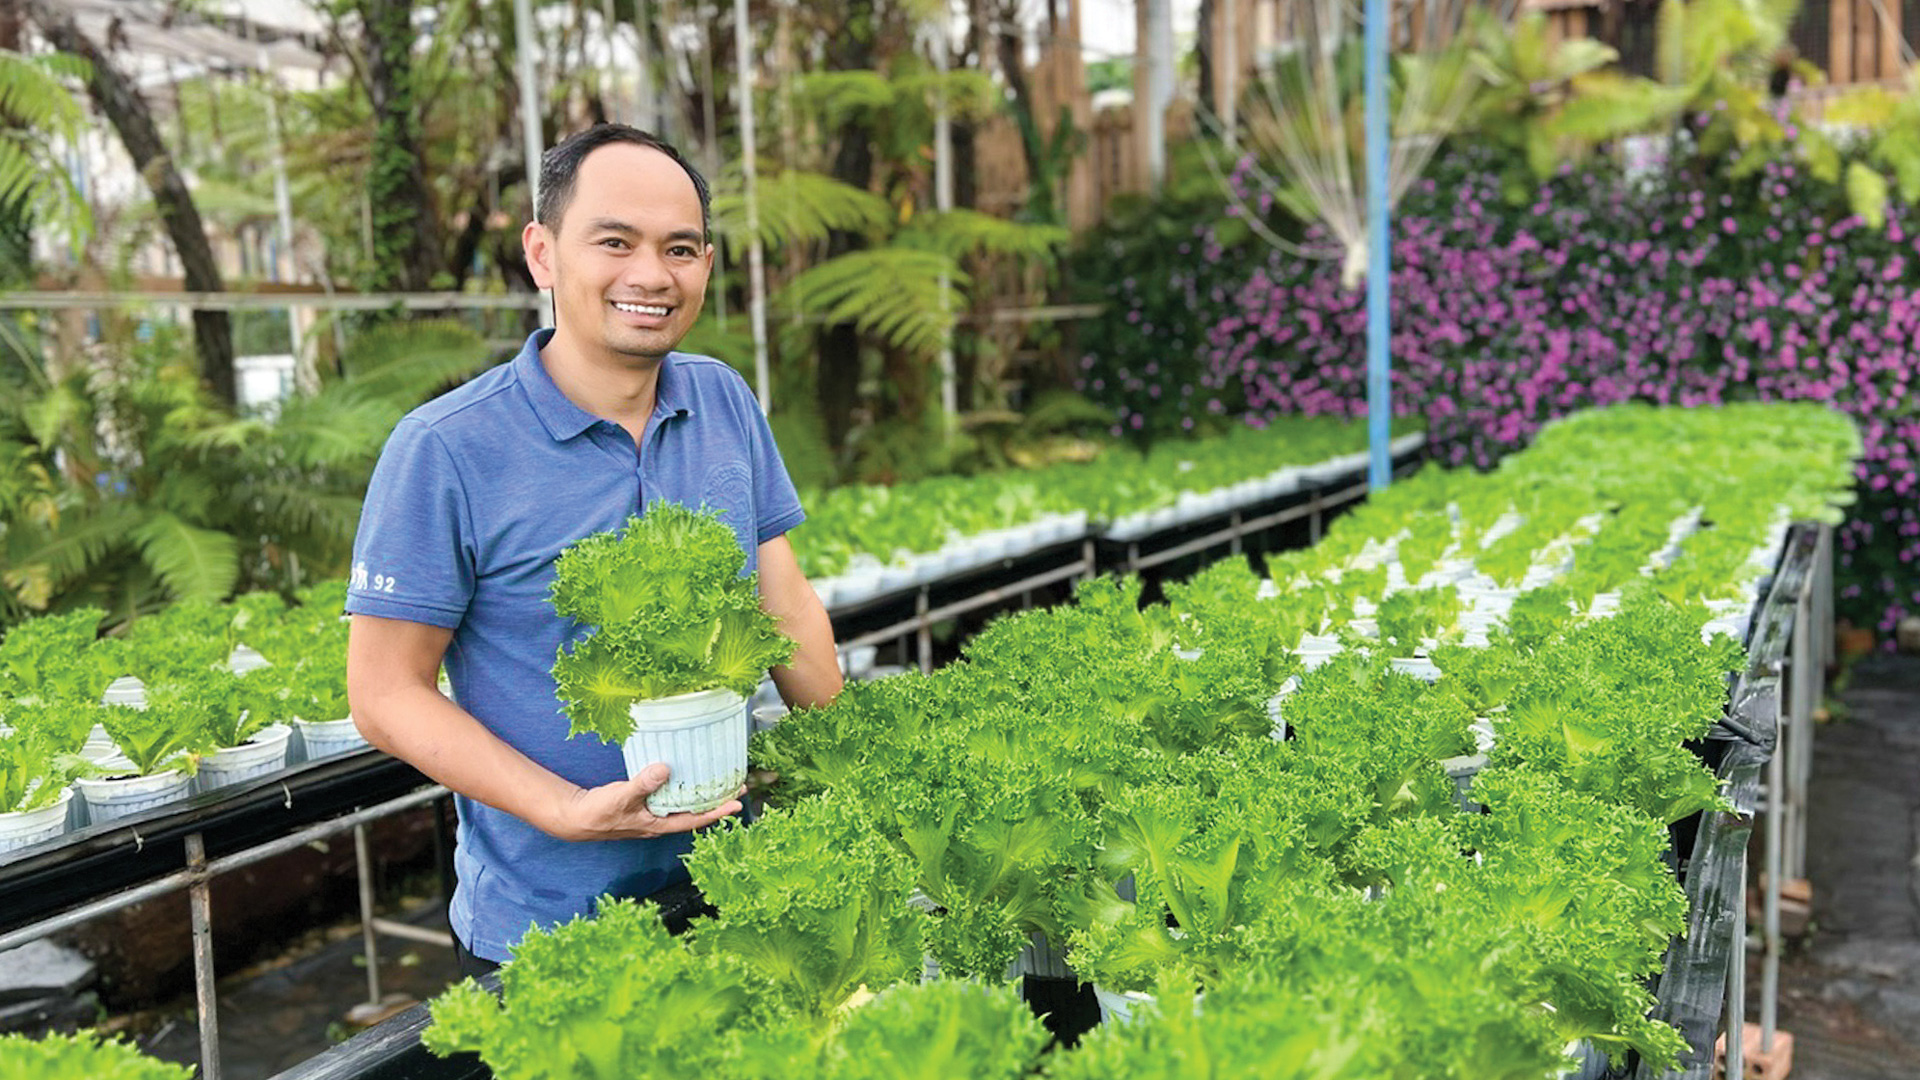 Tiên phong ứng dụng khoa học kỹ thuật hiện đại, anh Nguyễn Đức Huy đã thành công trong việc xây dựng thương hiệu cho HTX Thủy canh Việt, với chất lượng sản phẩm vượt trội